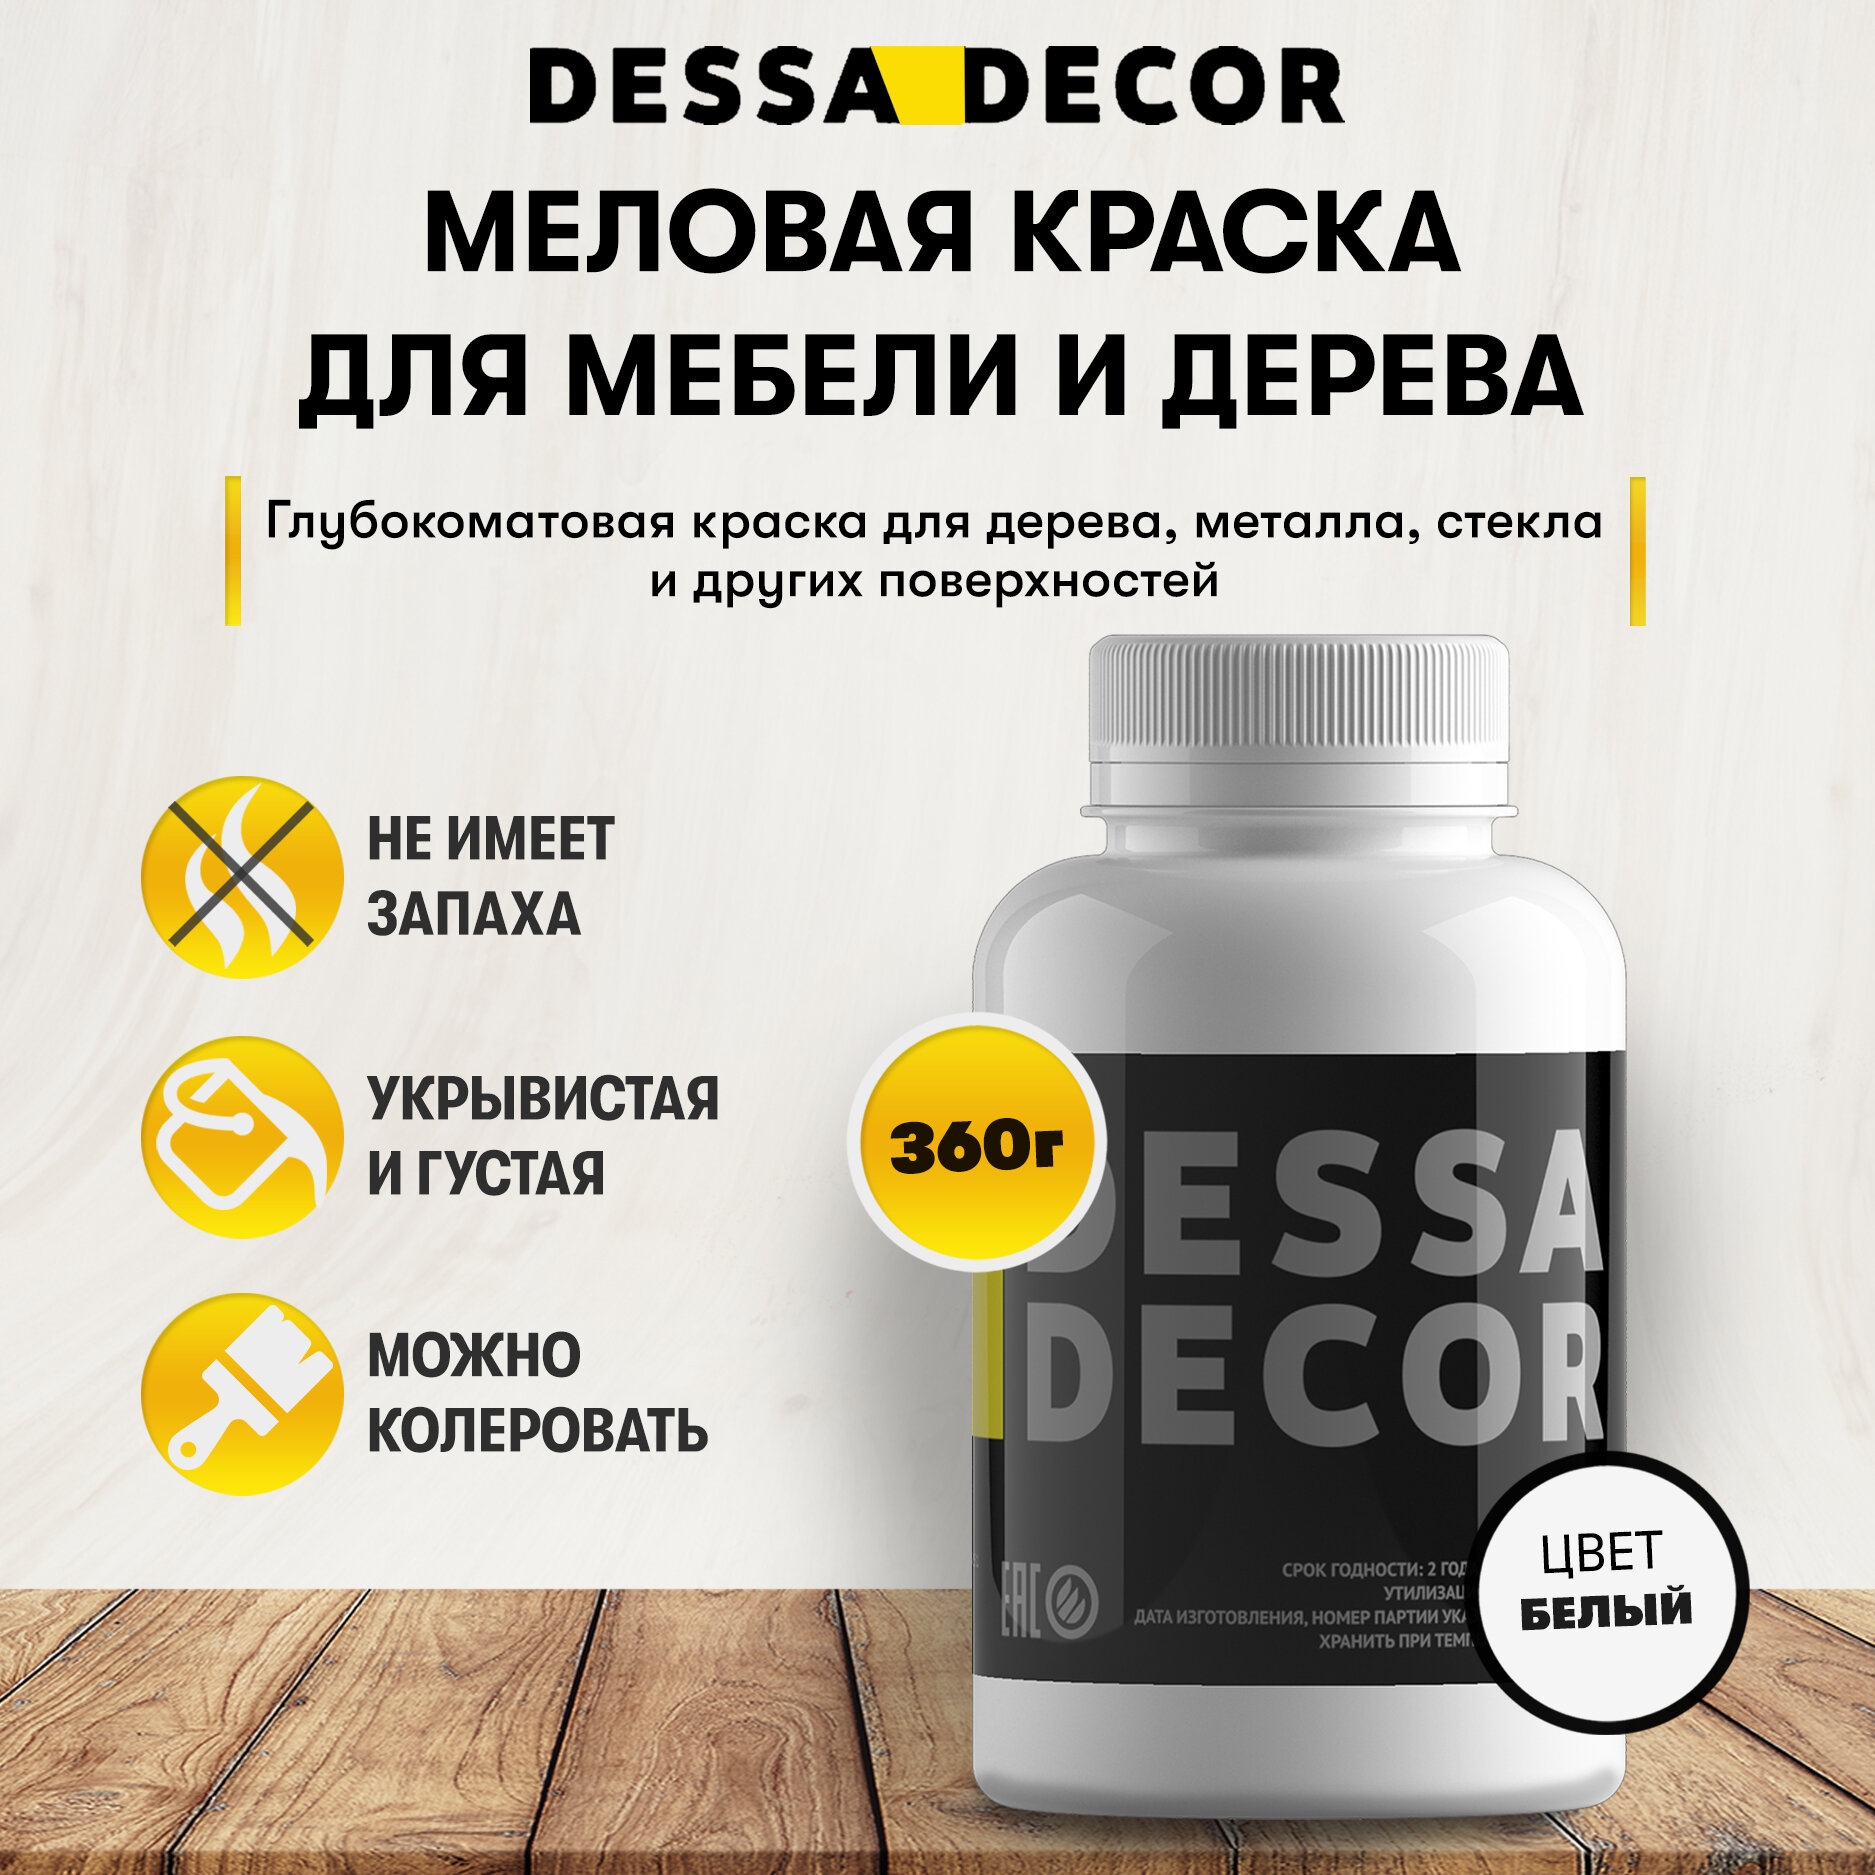 Меловая акриловая краска для мебели DESSA DECOR 360 г, для дерева, кухни, декора, пластика, стекла